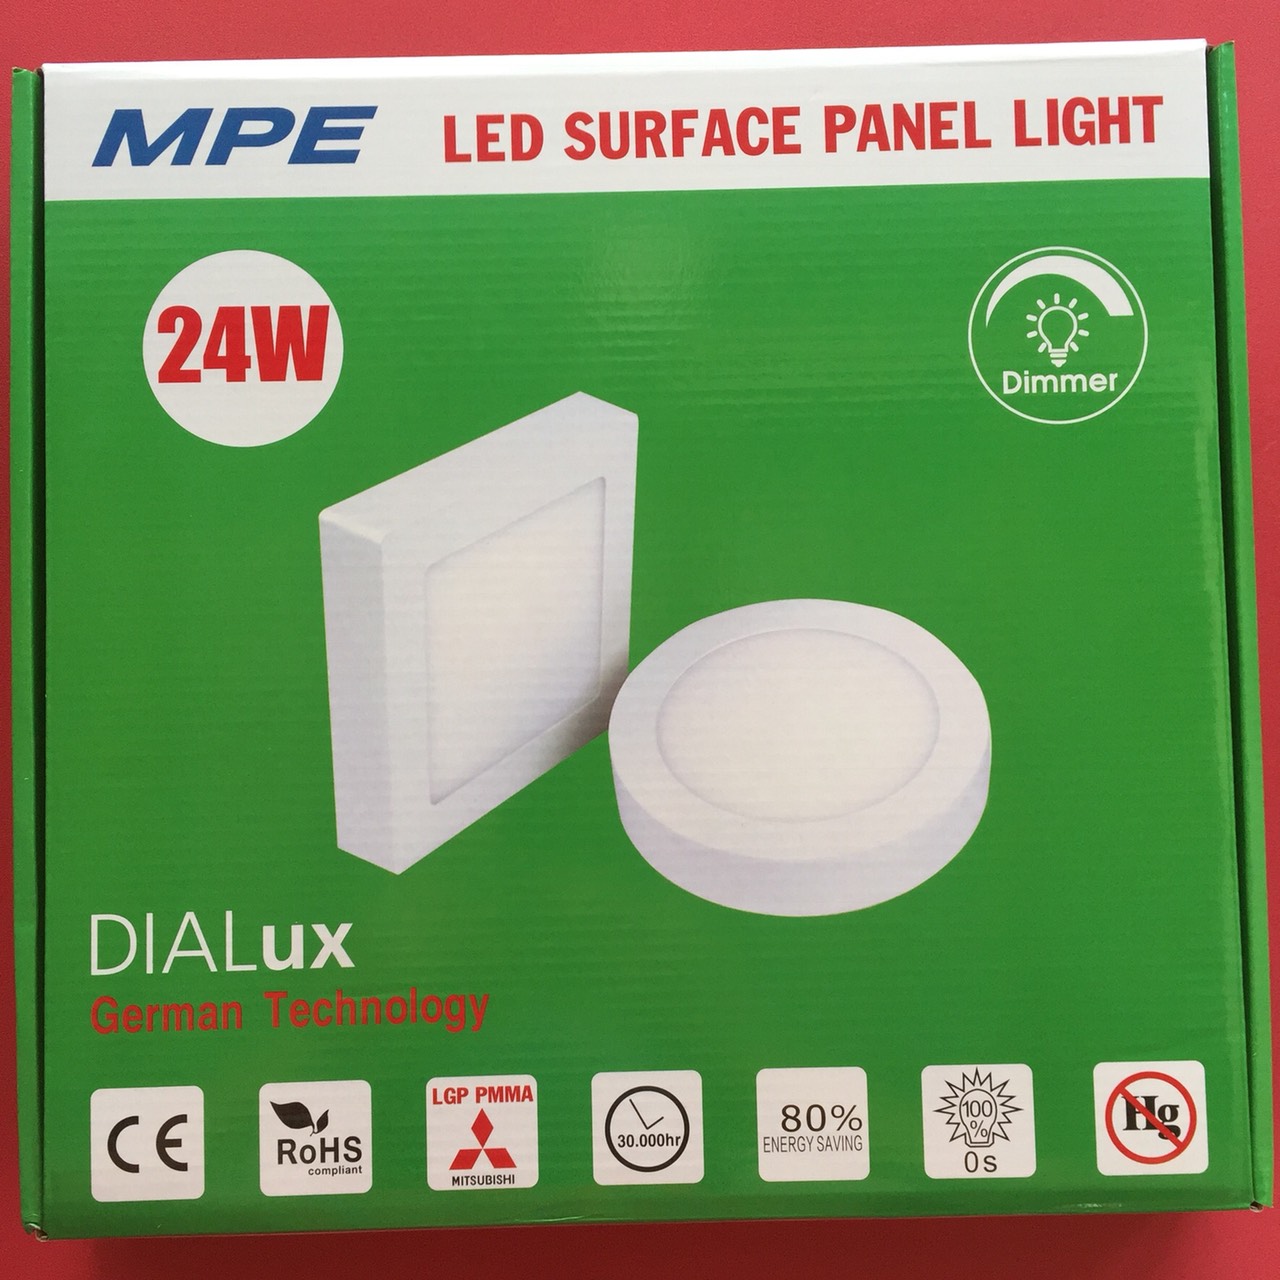 Đèn led panel ốp trần nổi vuông 24W MPE SSPL-24T, ánh sáng trắng, kích thước 300*300*25mm, đóng gói 1 cái/hộp, 10 cái/thùng